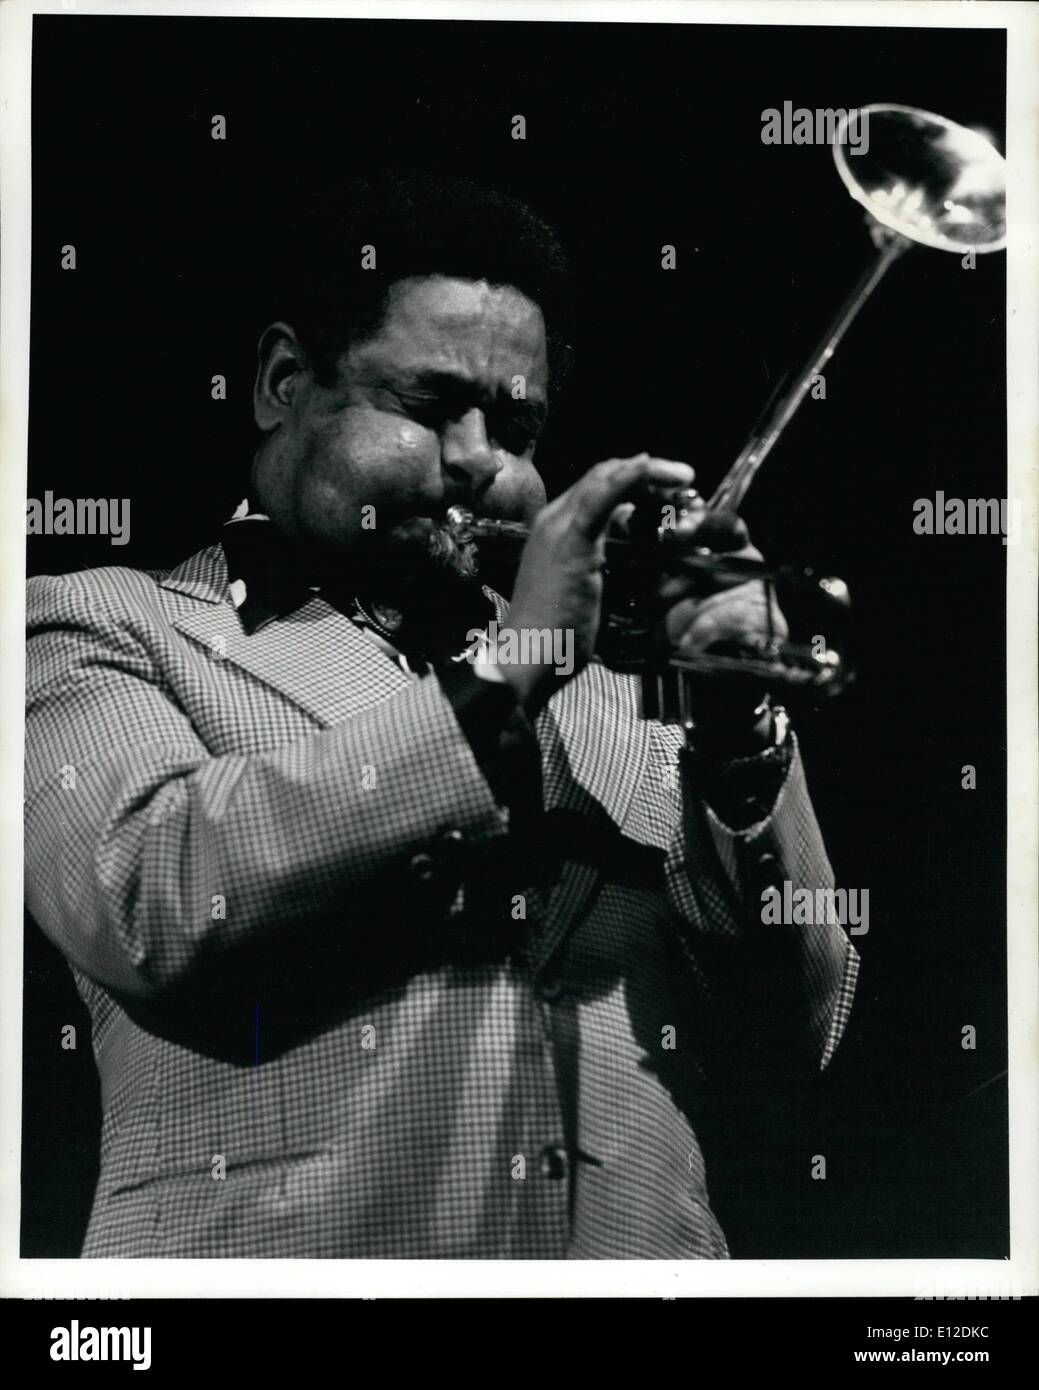 19 déc., 2011 - Dizzy Gillespie. internationalement connu trompettiste de Jazz, compositeur, chef d'orchestre et la chanteuse d'effectuer à la discothèque village gate, New York 1978. Banque D'Images